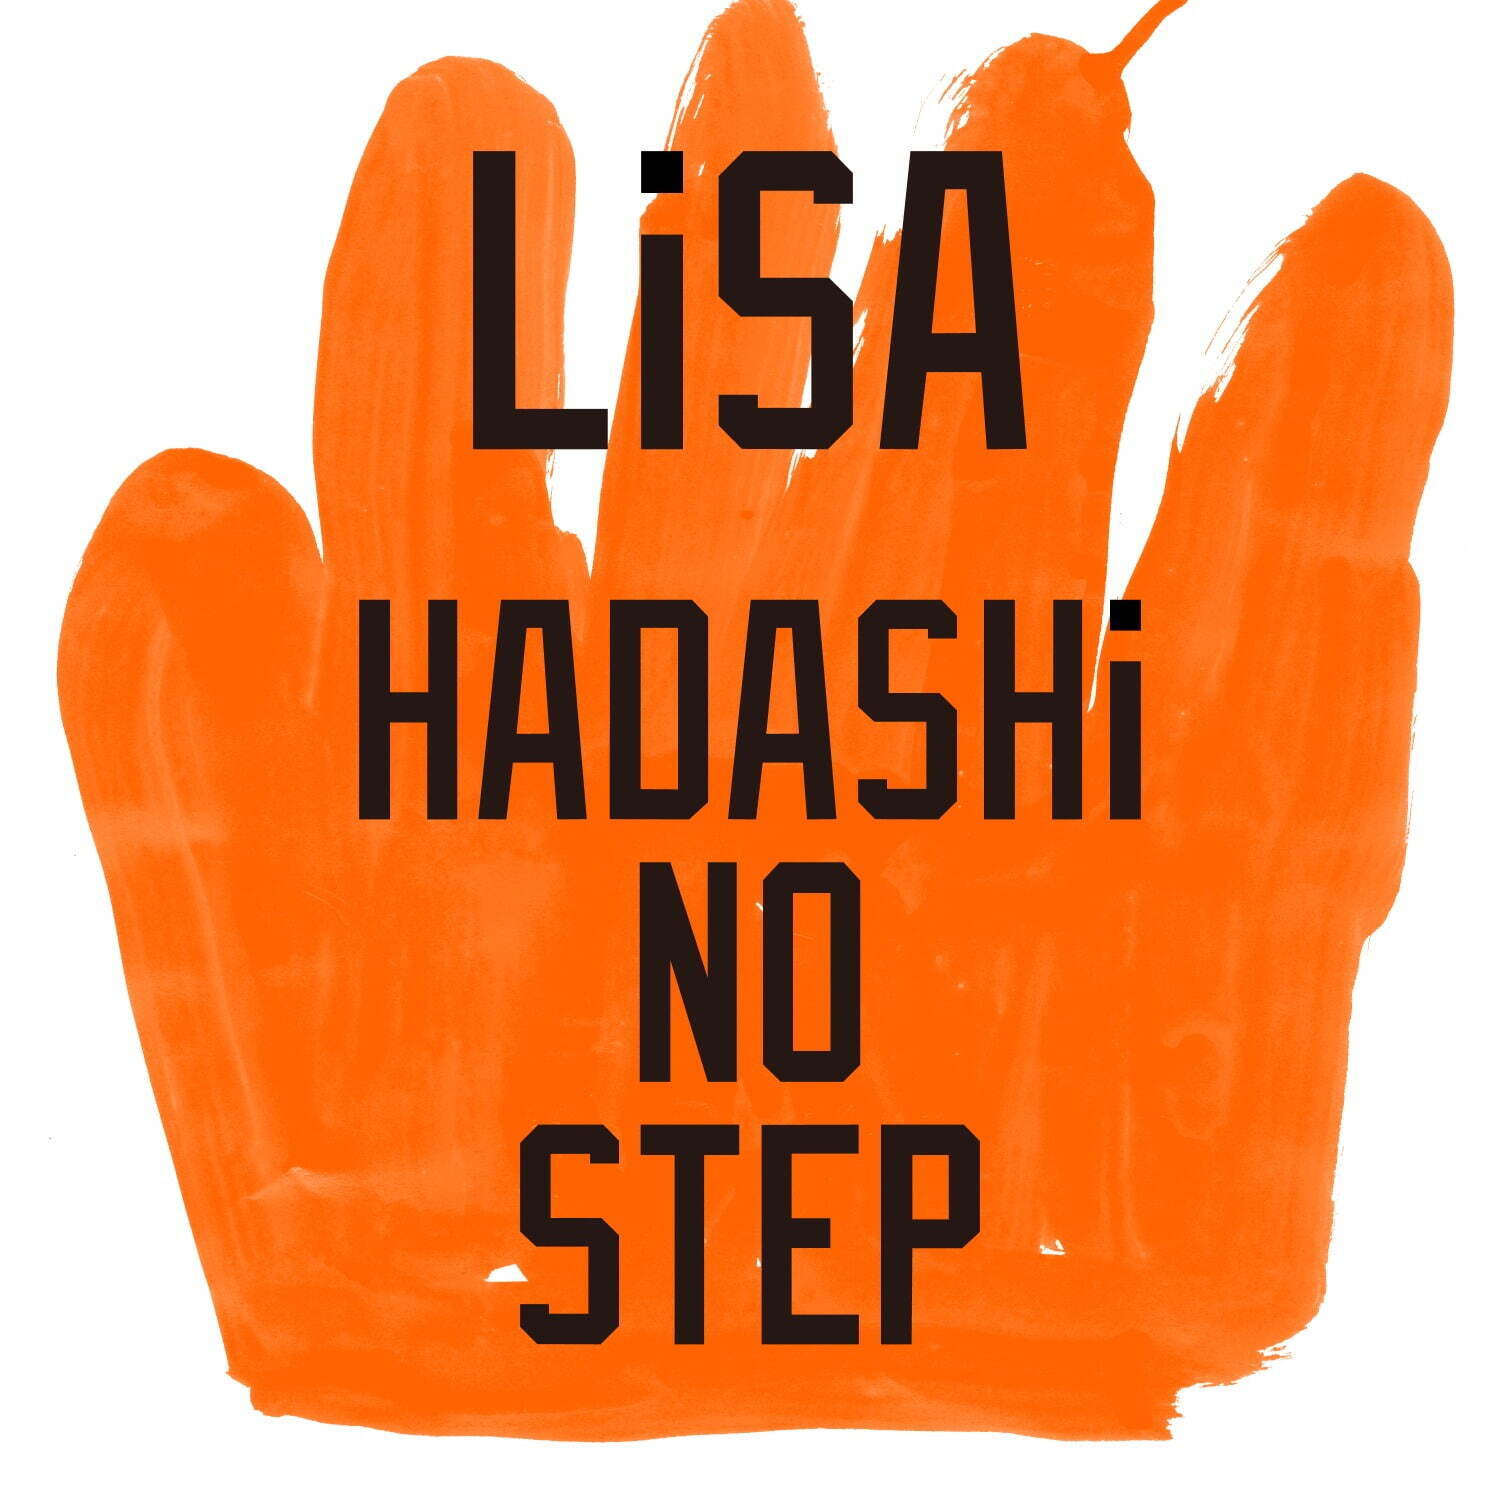 Lisaの新曲 Hadashi No Step 二階堂ふみ主演ドラマ プロミス シンデレラ 主題歌に ファッションプレス